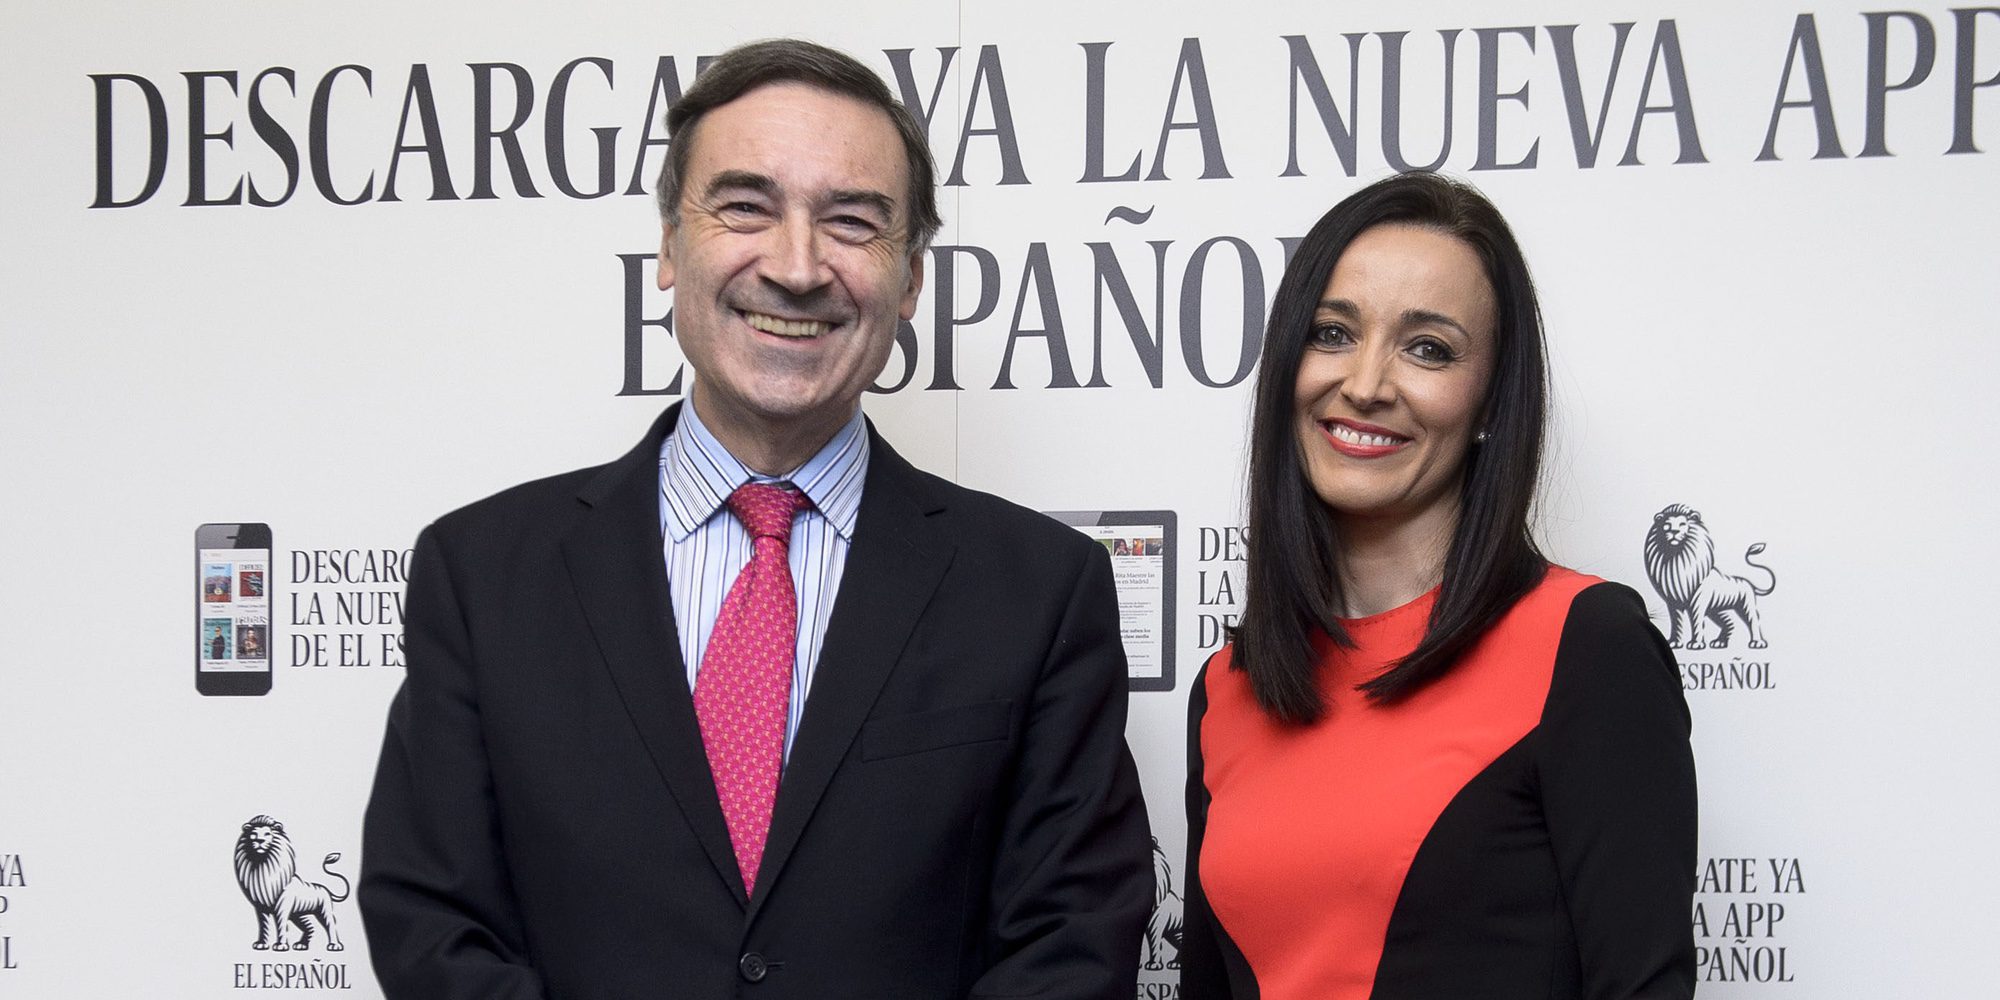 Pedro J. Ramírez y Cruz Sánchez de Lara estrenan casoplón de 3 millones de euros